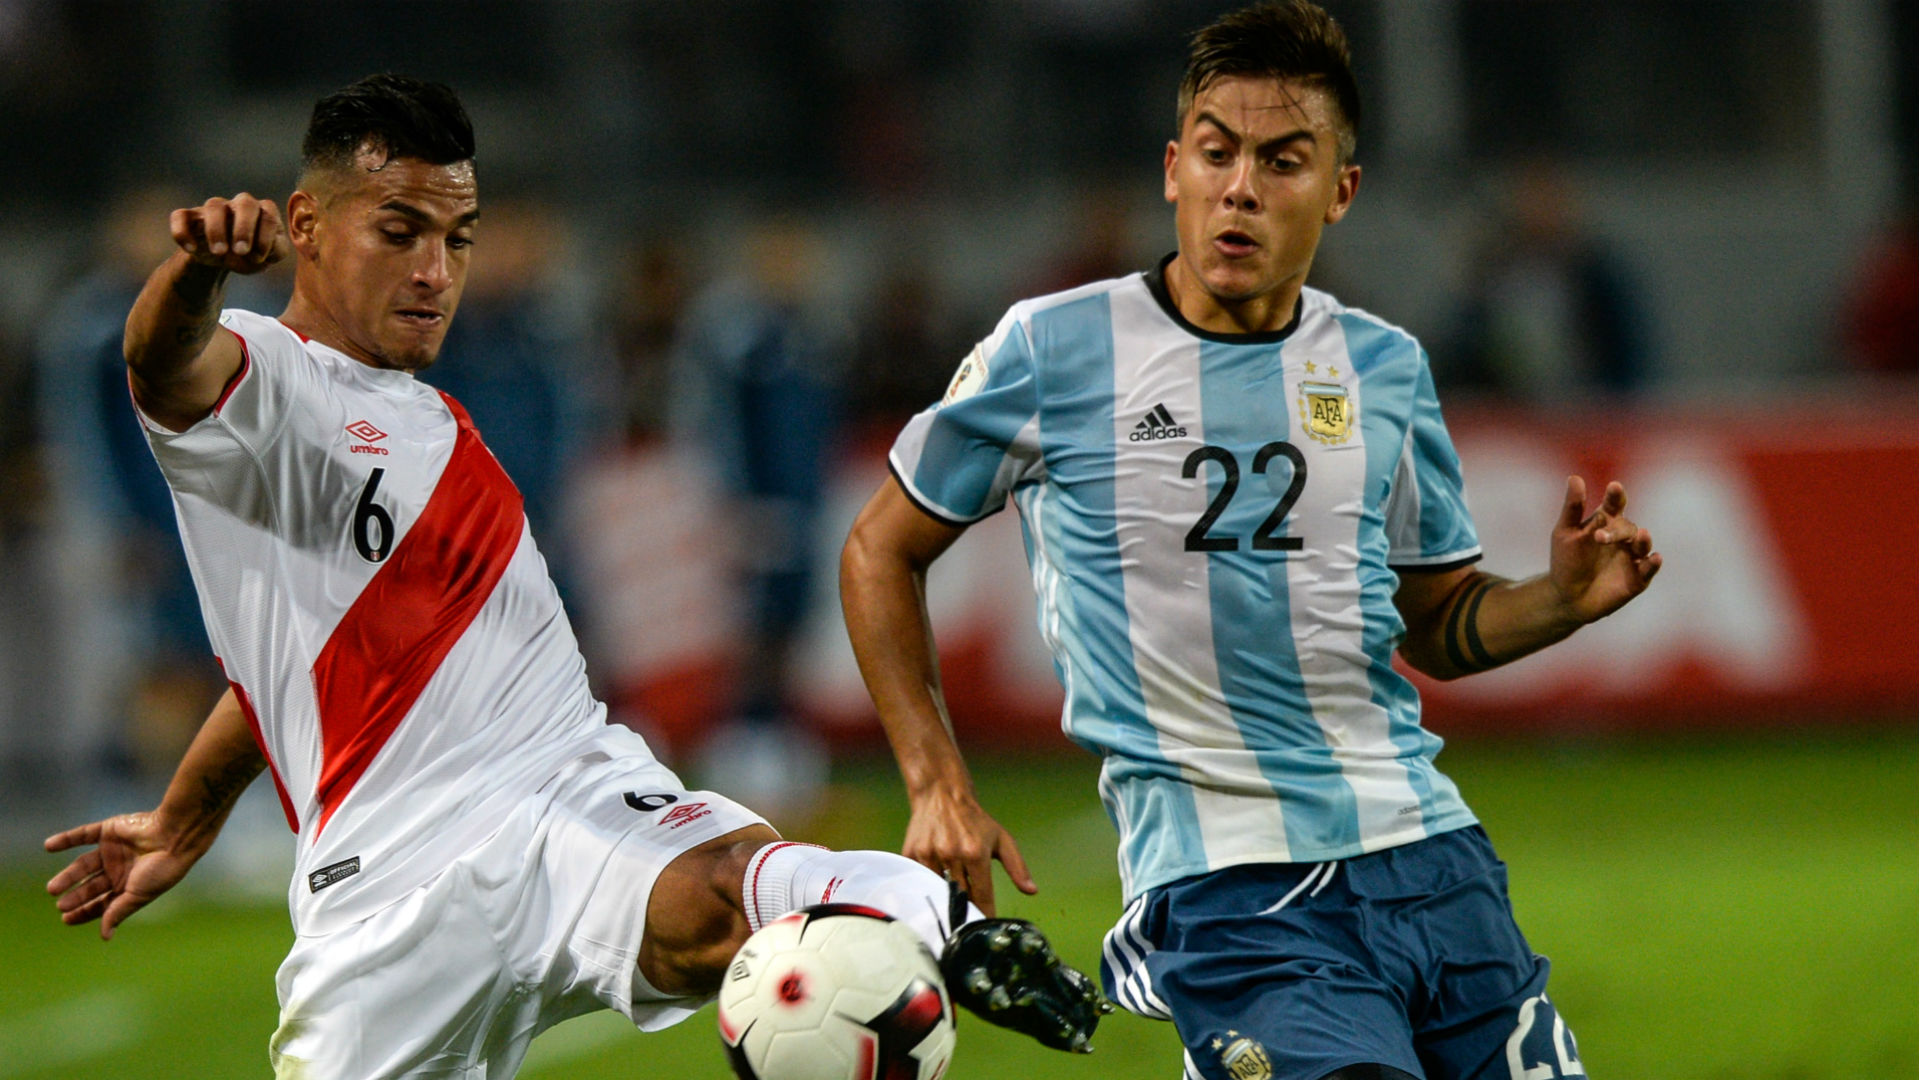 Peru – Argentina Eliminatorias Sudamericanas 06102016